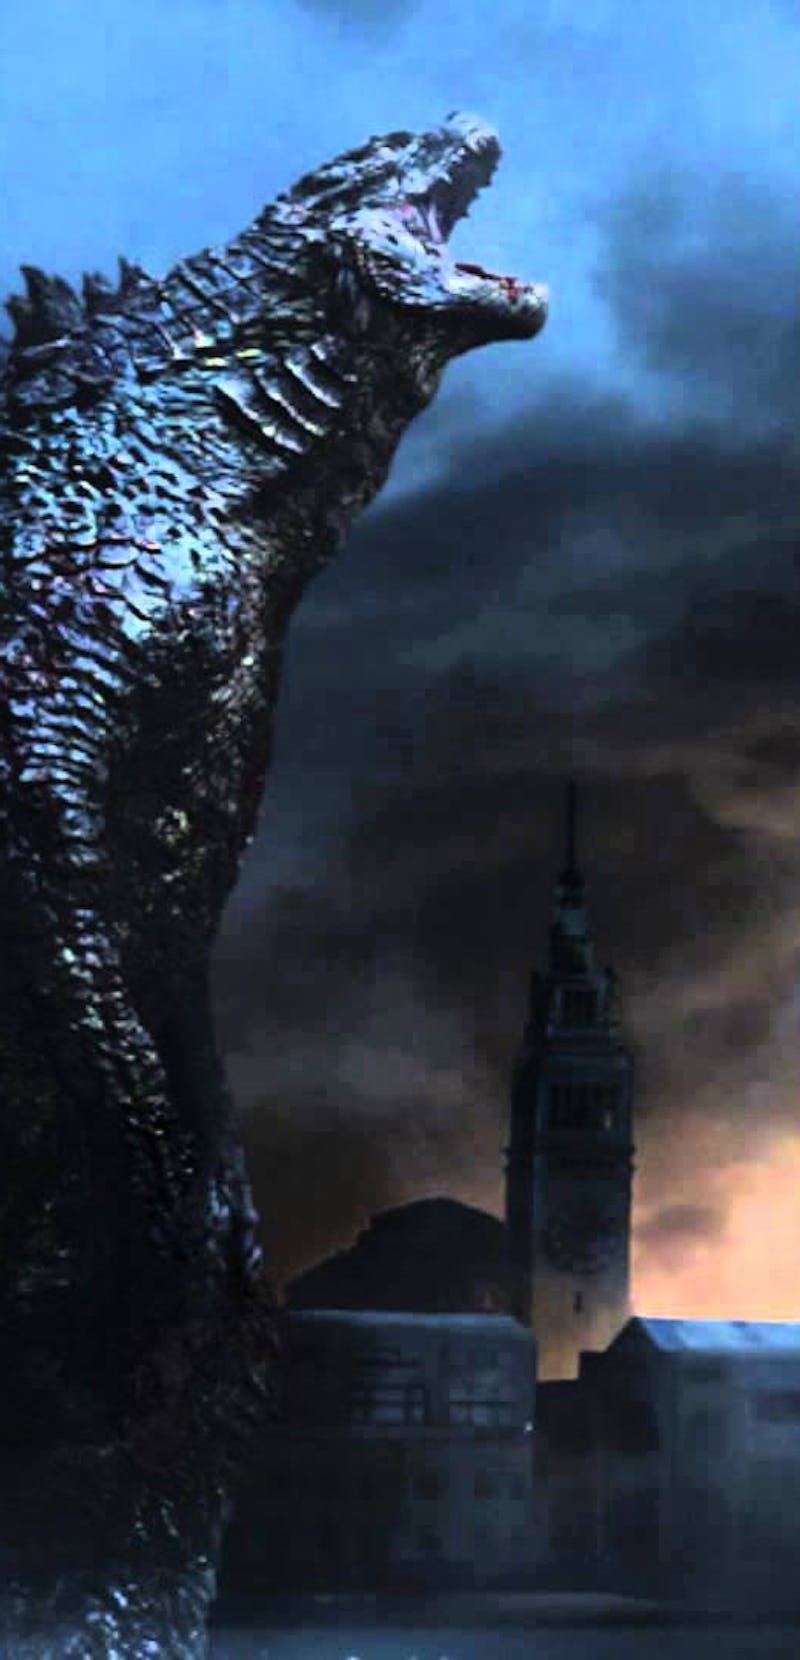 Godzilla monster in a scene 